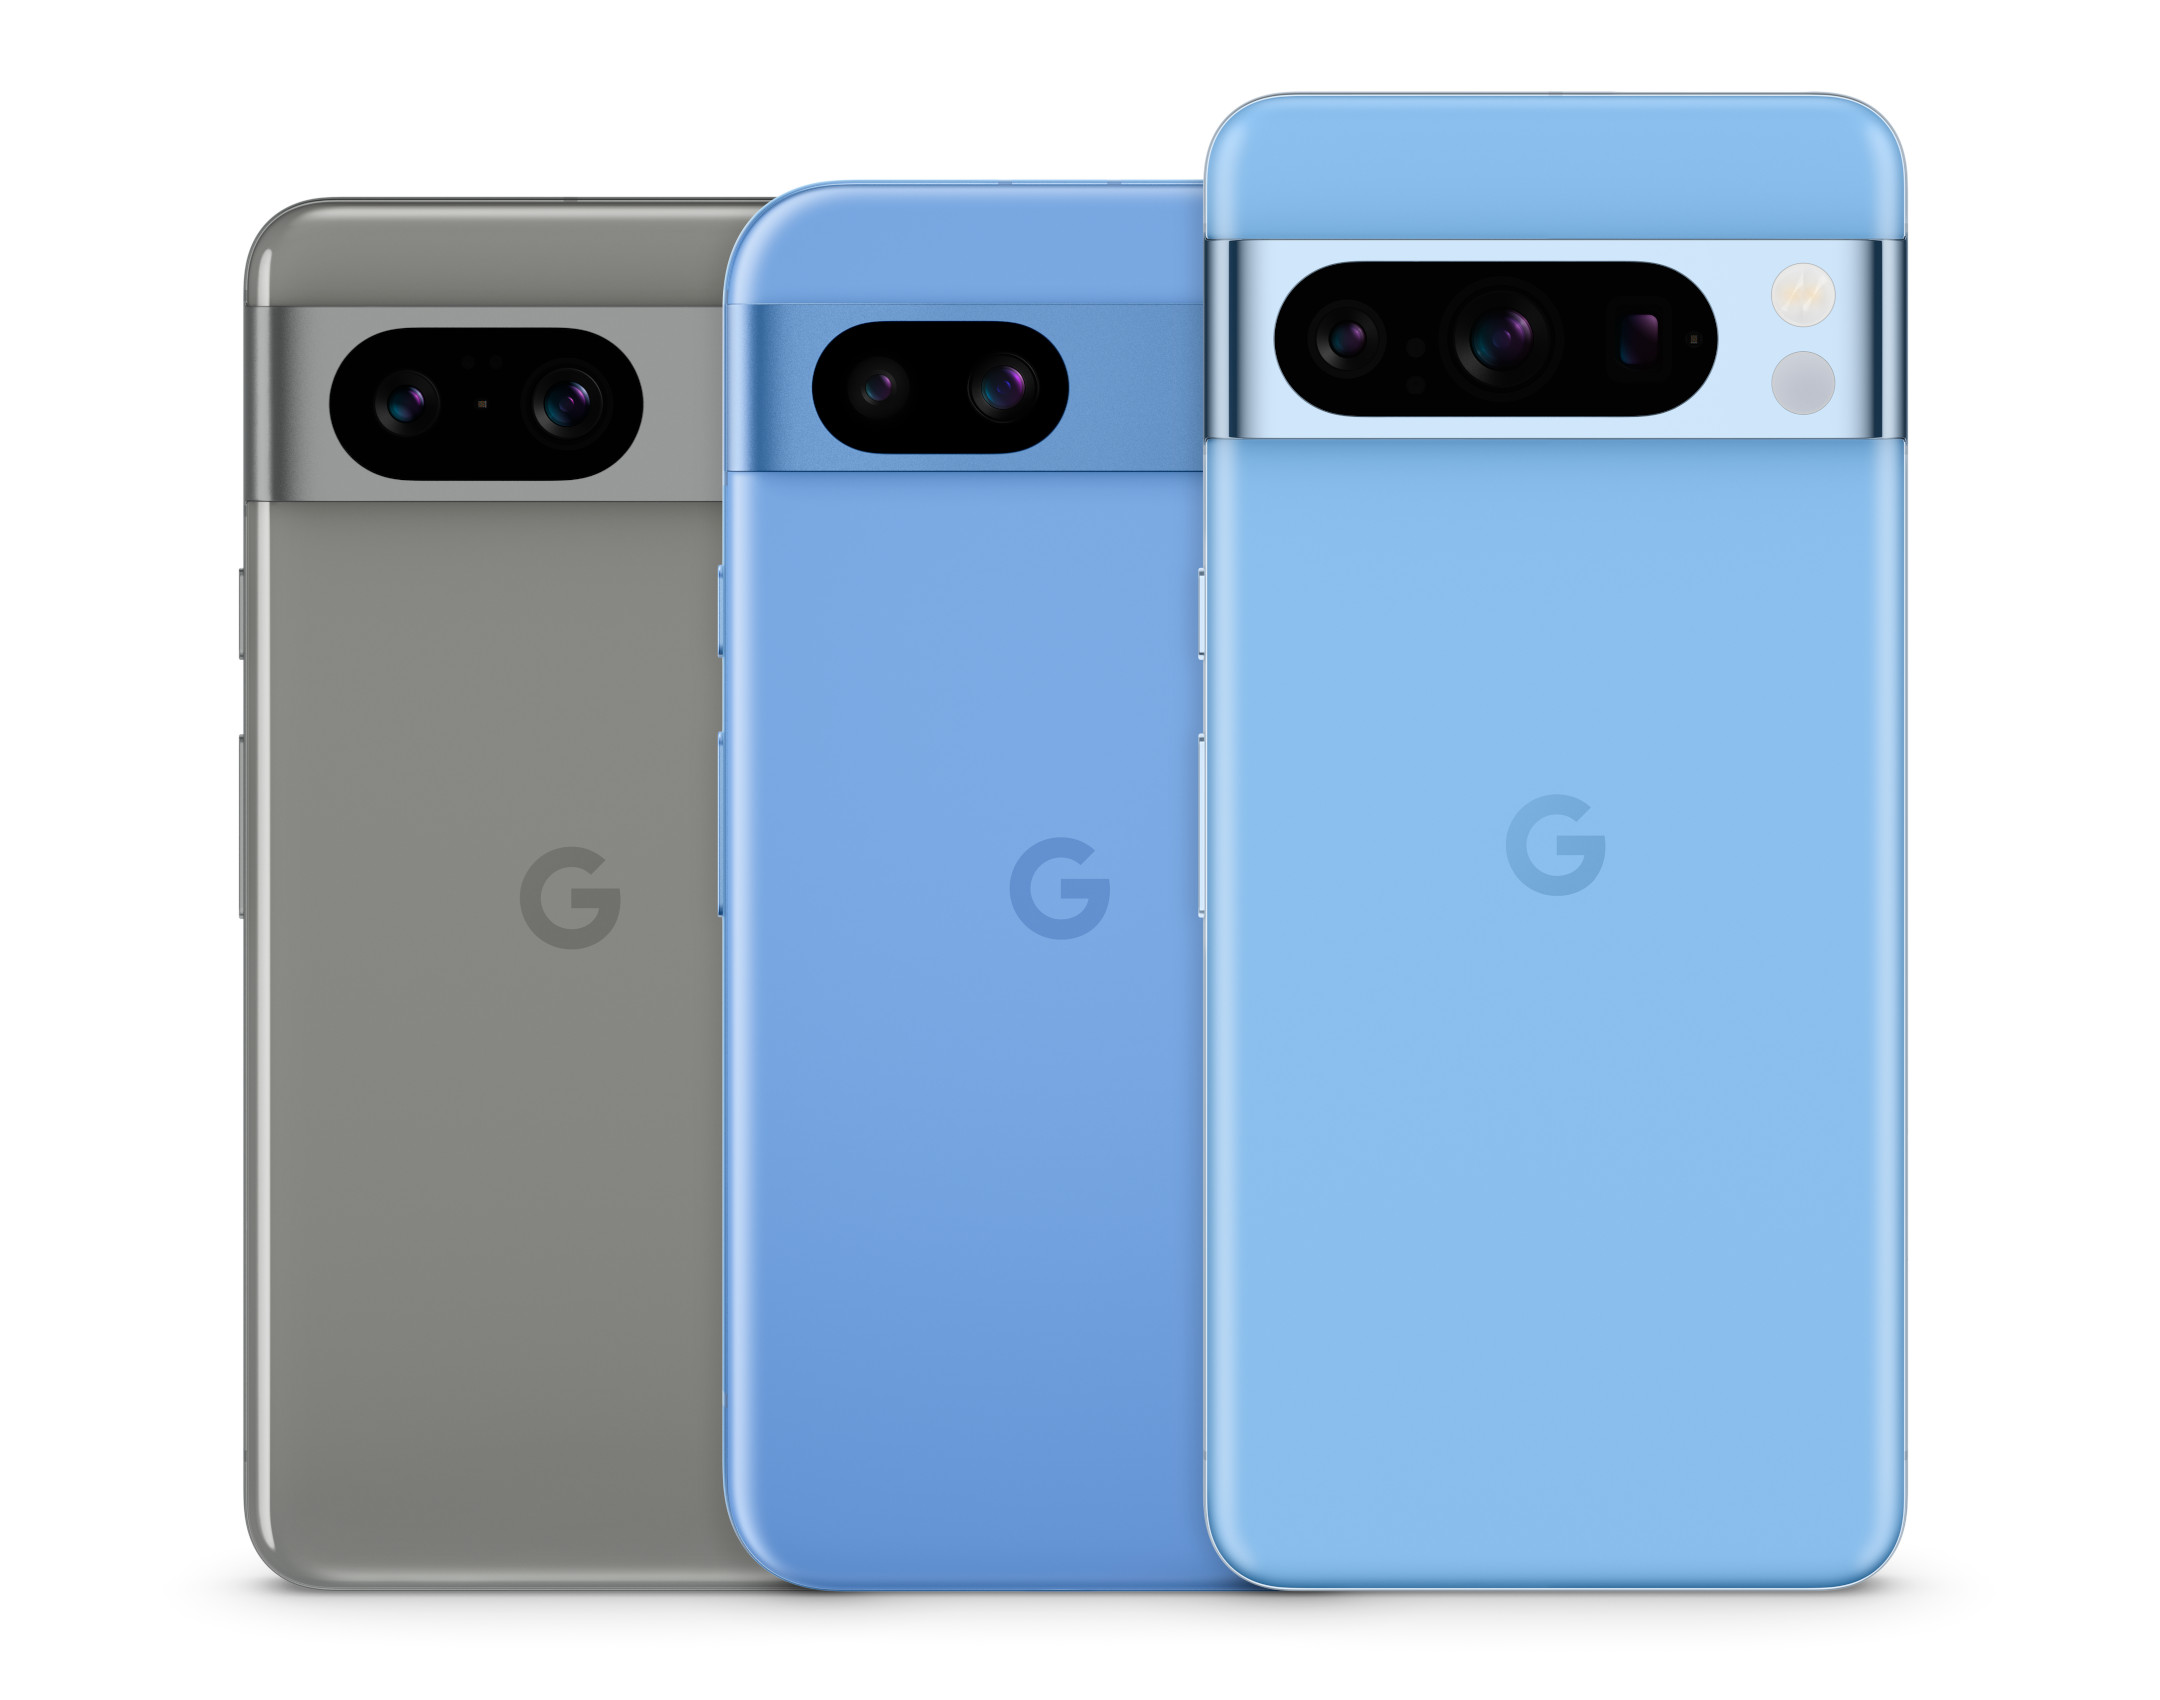 android, google pixel i google store oficjalnie w polsce! trzy smartfony na start